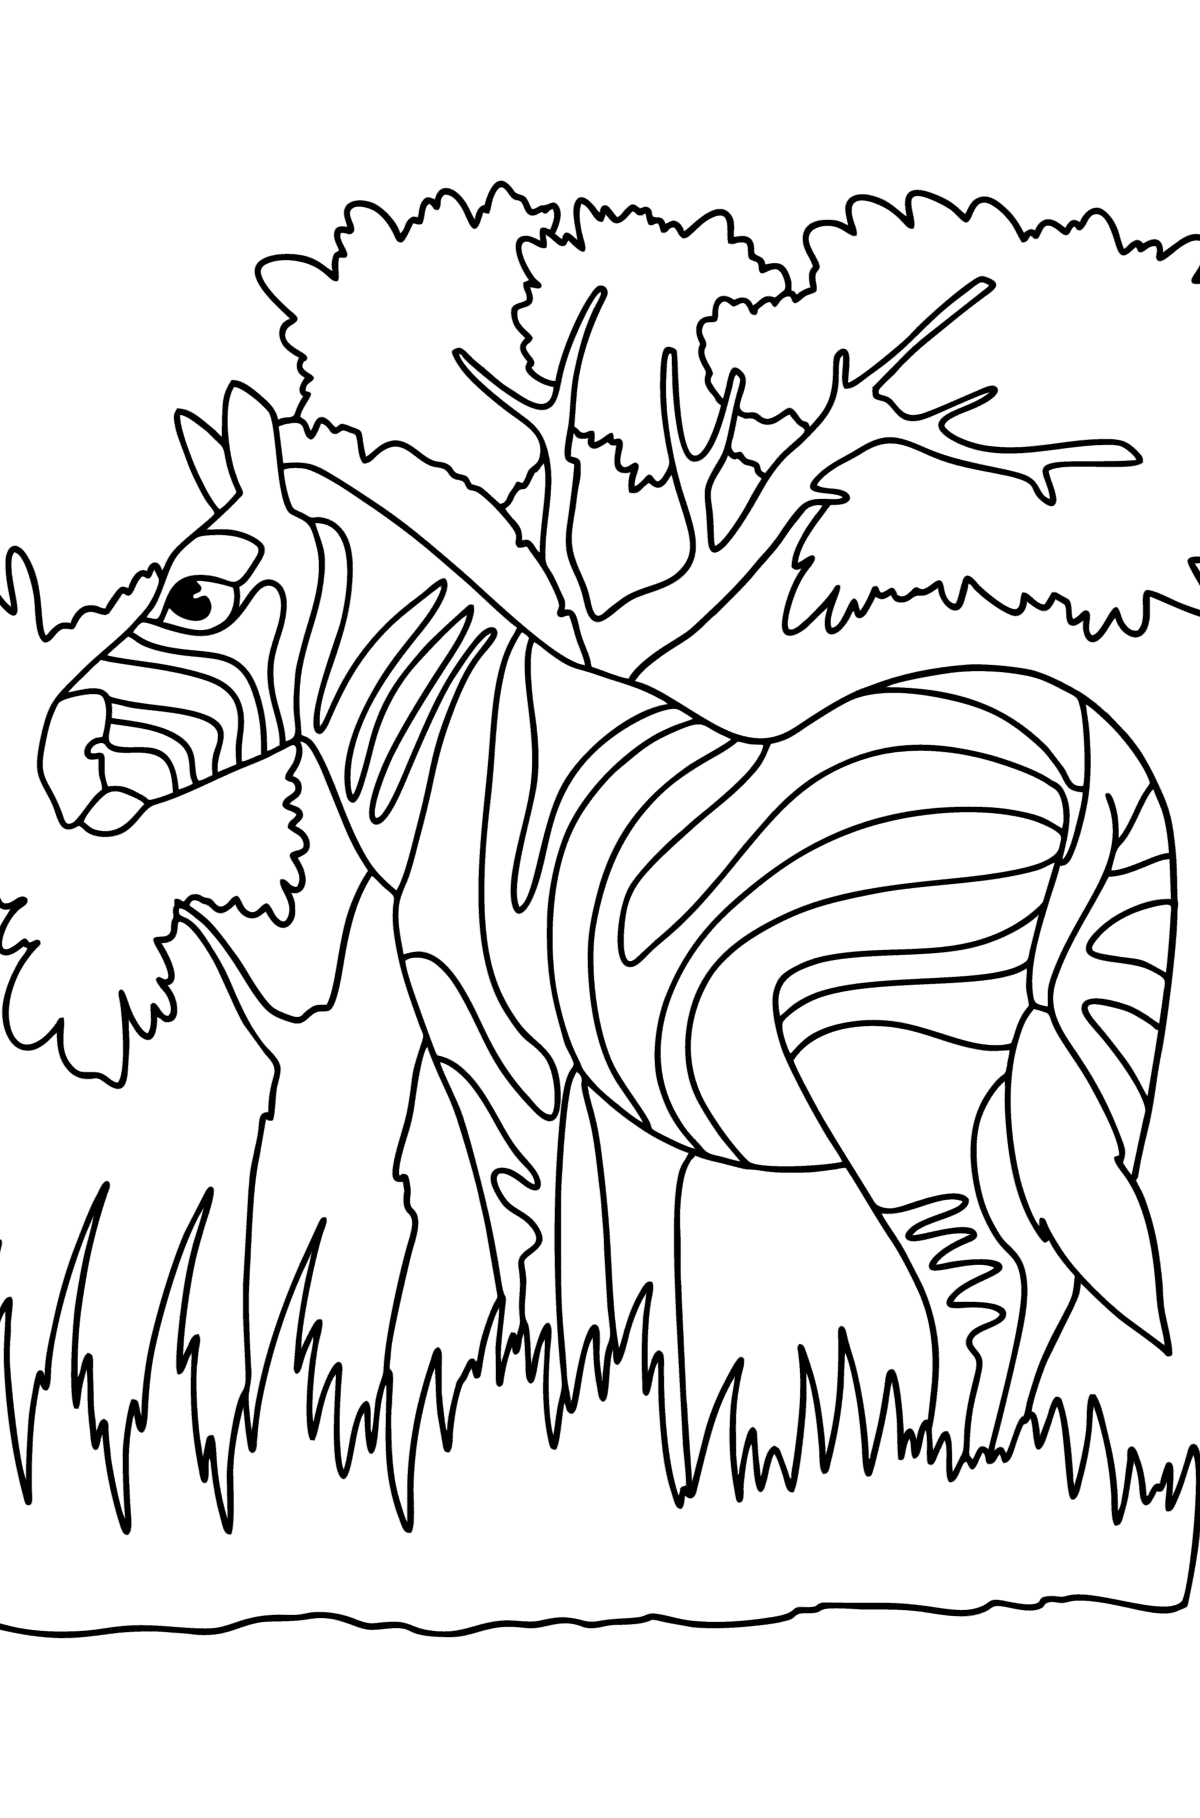 Zebra in de natuur kleurplaat - kleurplaten voor kinderen